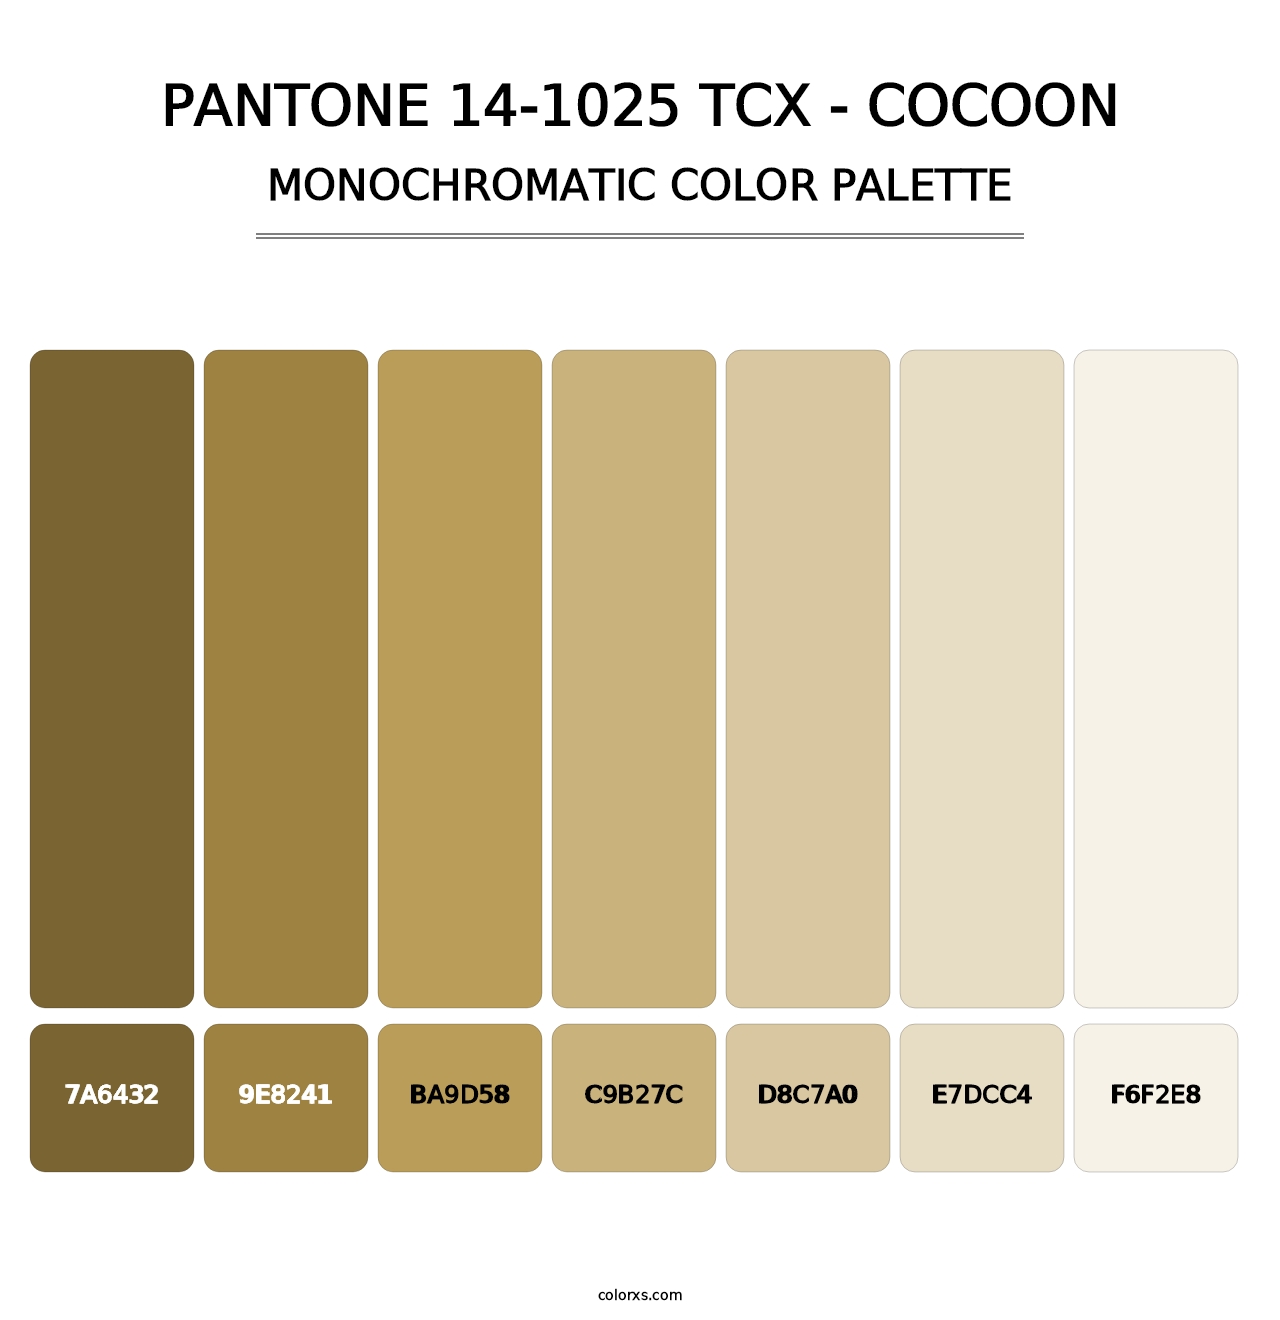 PANTONE 14-1025 TCX - Cocoon - Monochromatic Color Palette